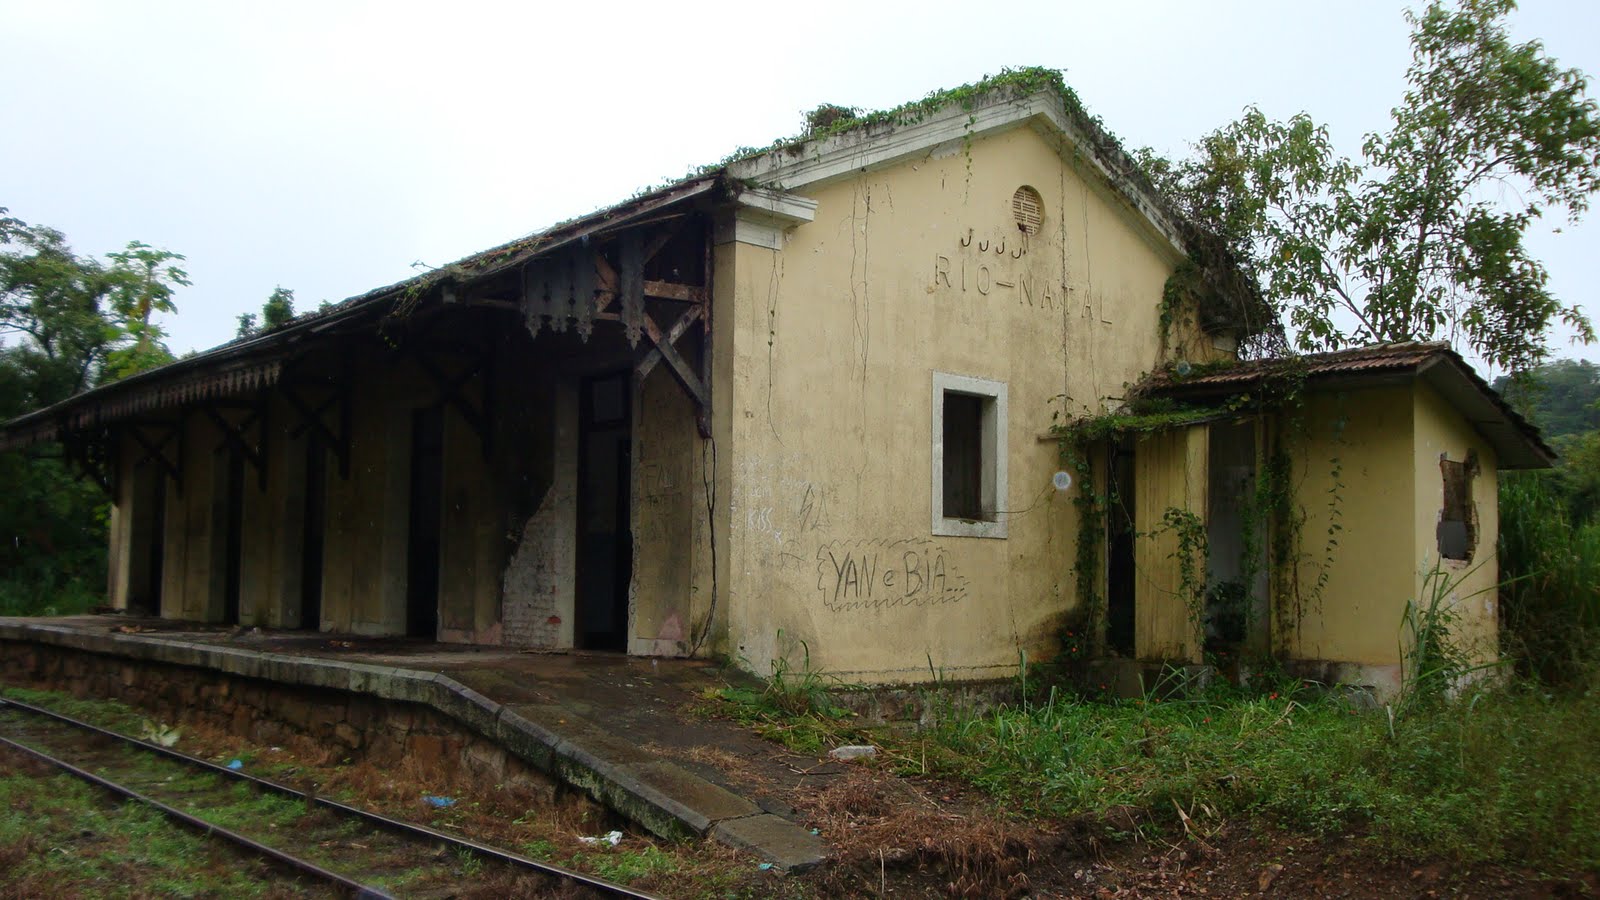 Figura 10: Estação do Rio Natal (abandonada)